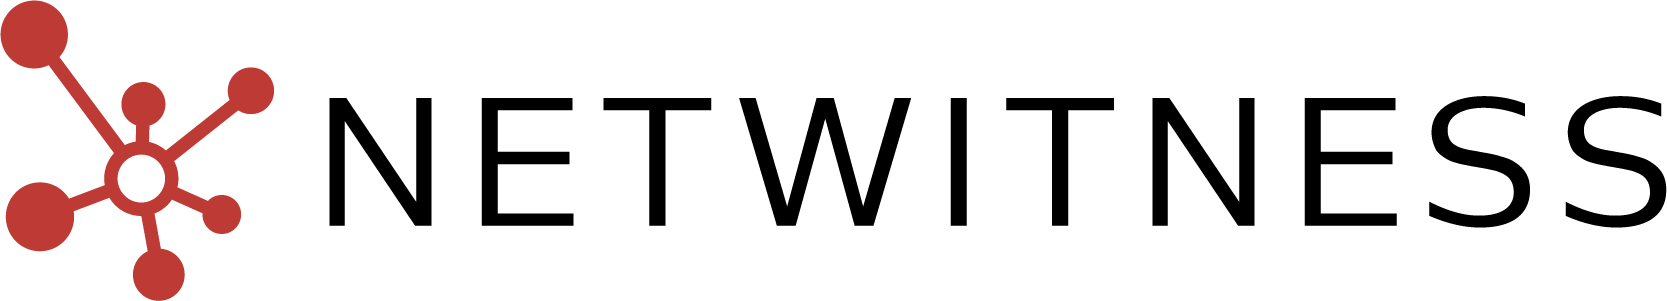 netwitness-logo-RGB